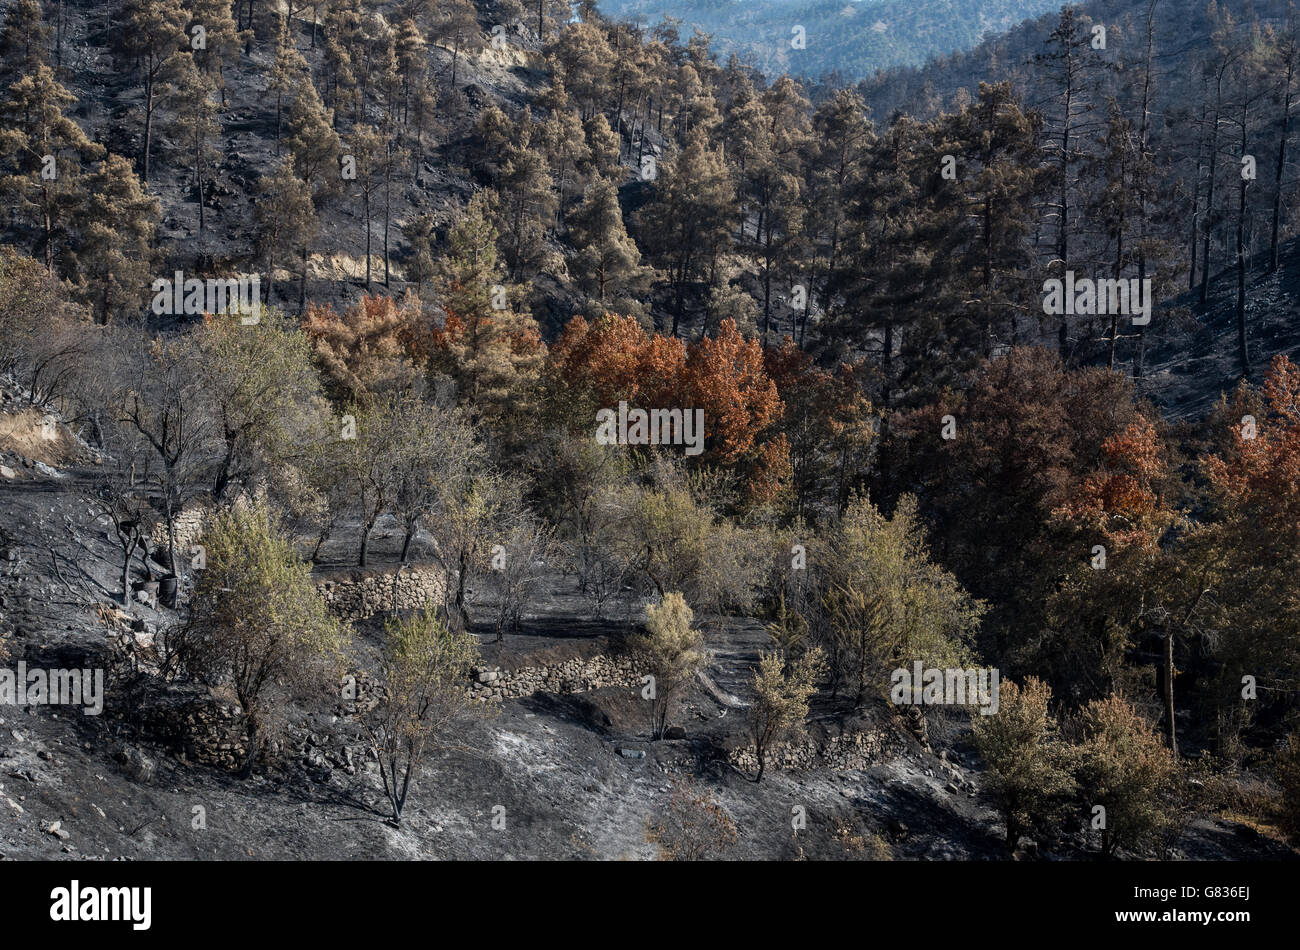 Foresta e alberi dopo un grande incendio di foresta a Monti Troodos in Cipro che ha creato un grande danno ambientale. Foto Stock